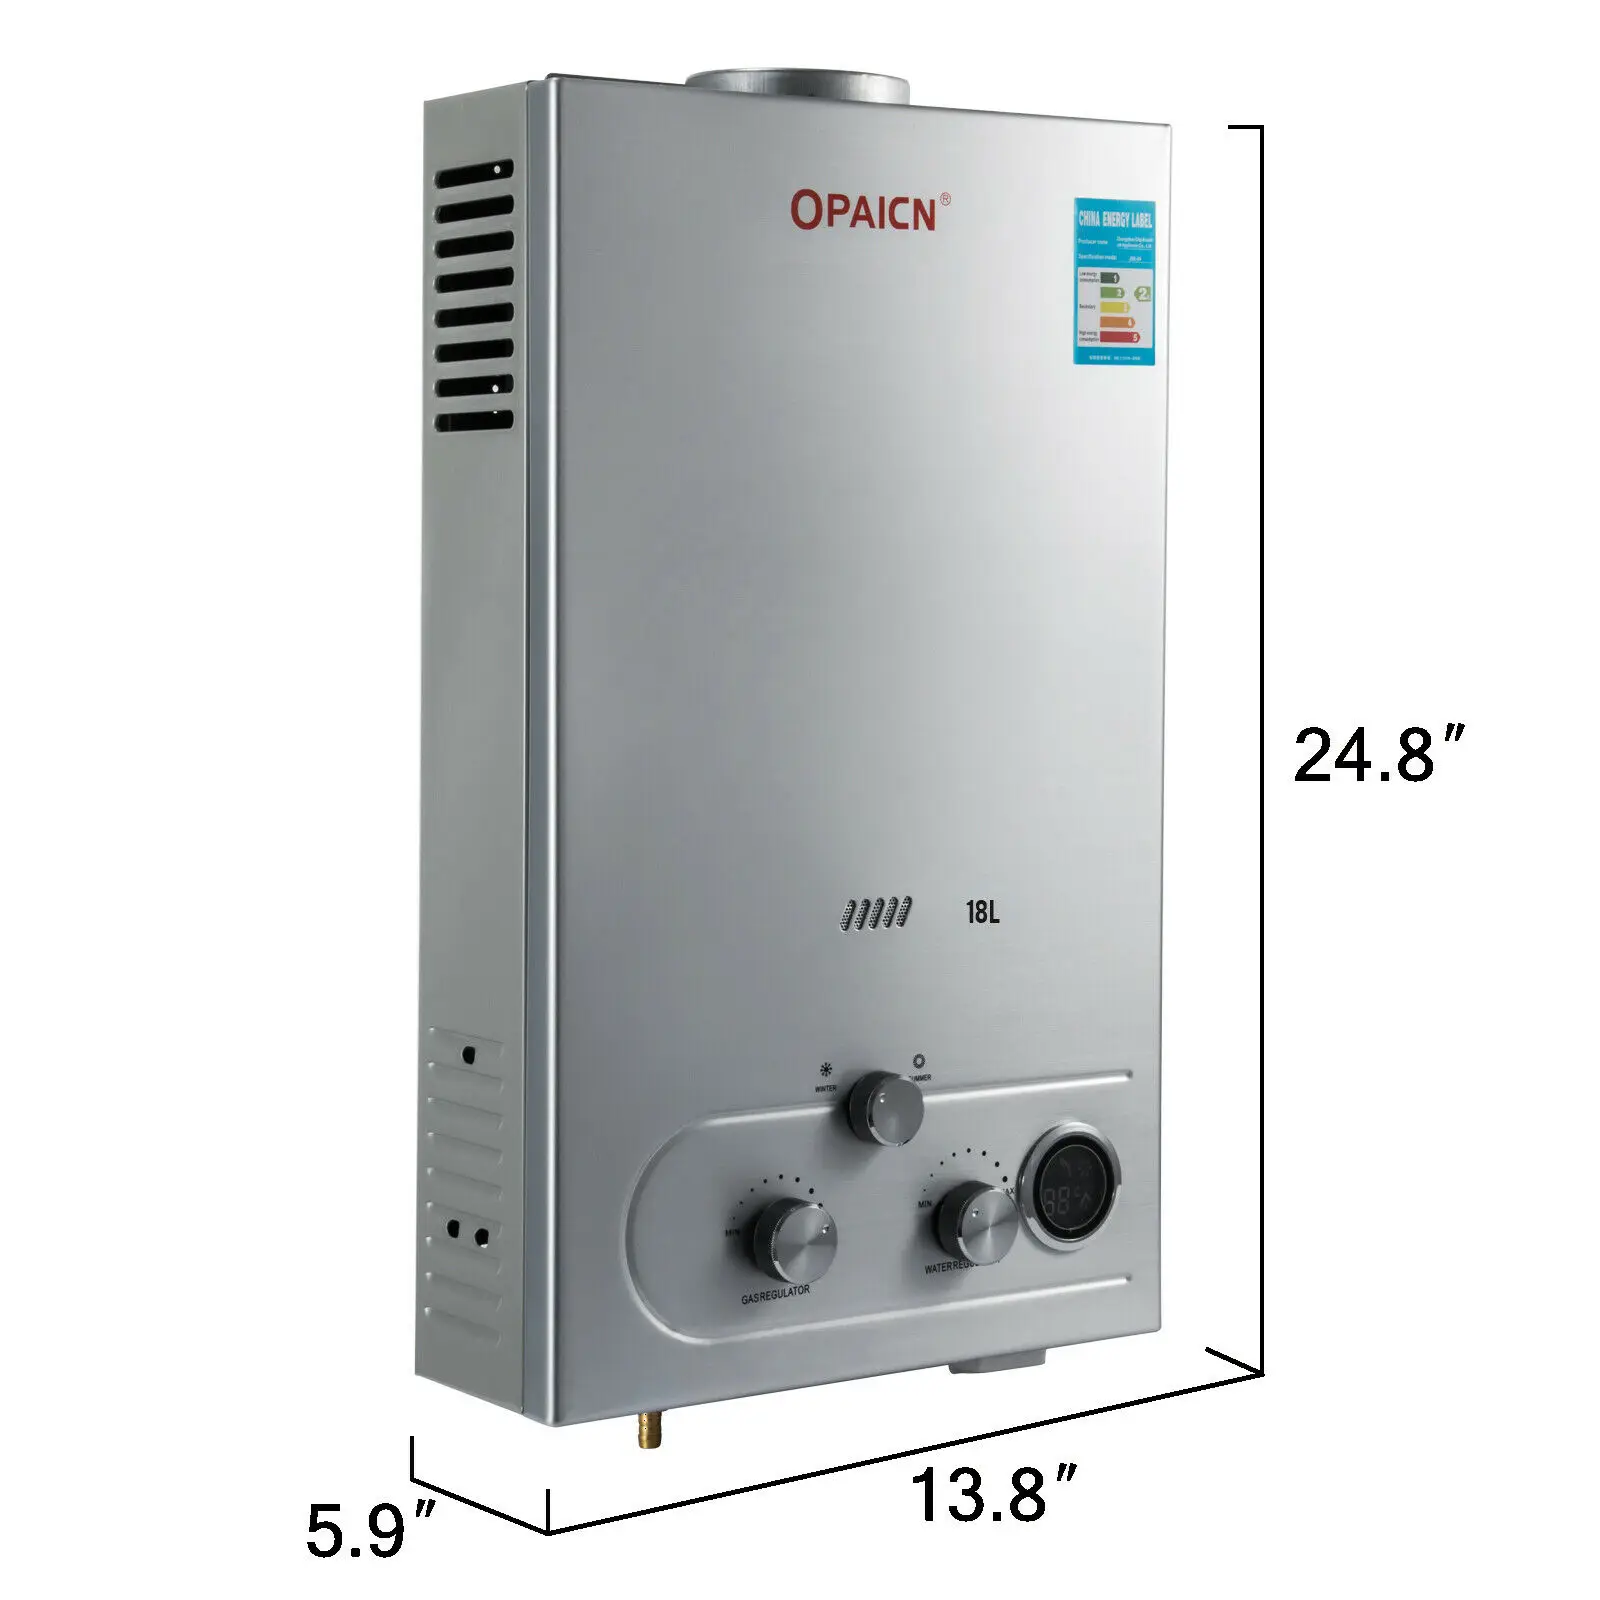 8L LPG Propangas Gas Warmwasserbereiter Warmwasserspeicher Durchlauferhitzer DHL 